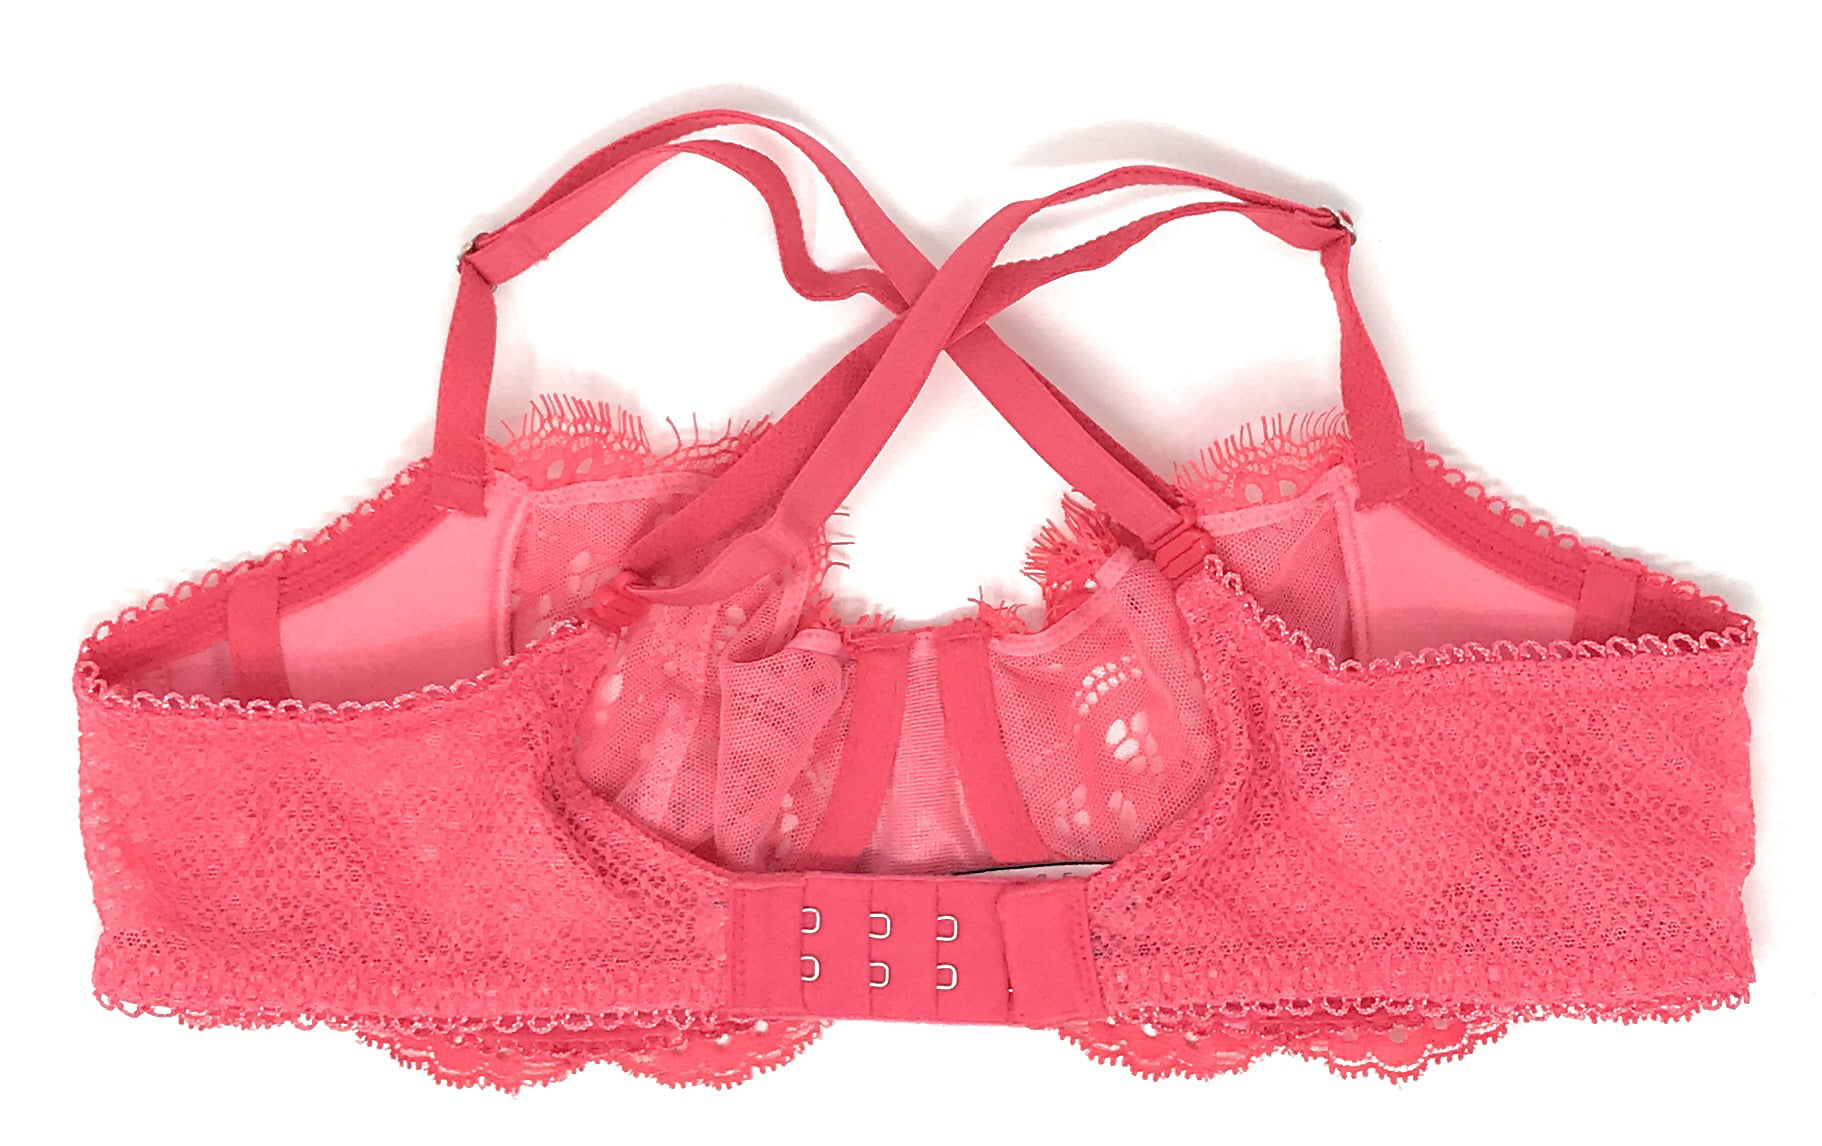 Victoria's Secret Victoria's Secret Wicked Unlined Strawberry Embroidery  Balconette Bra 64.95